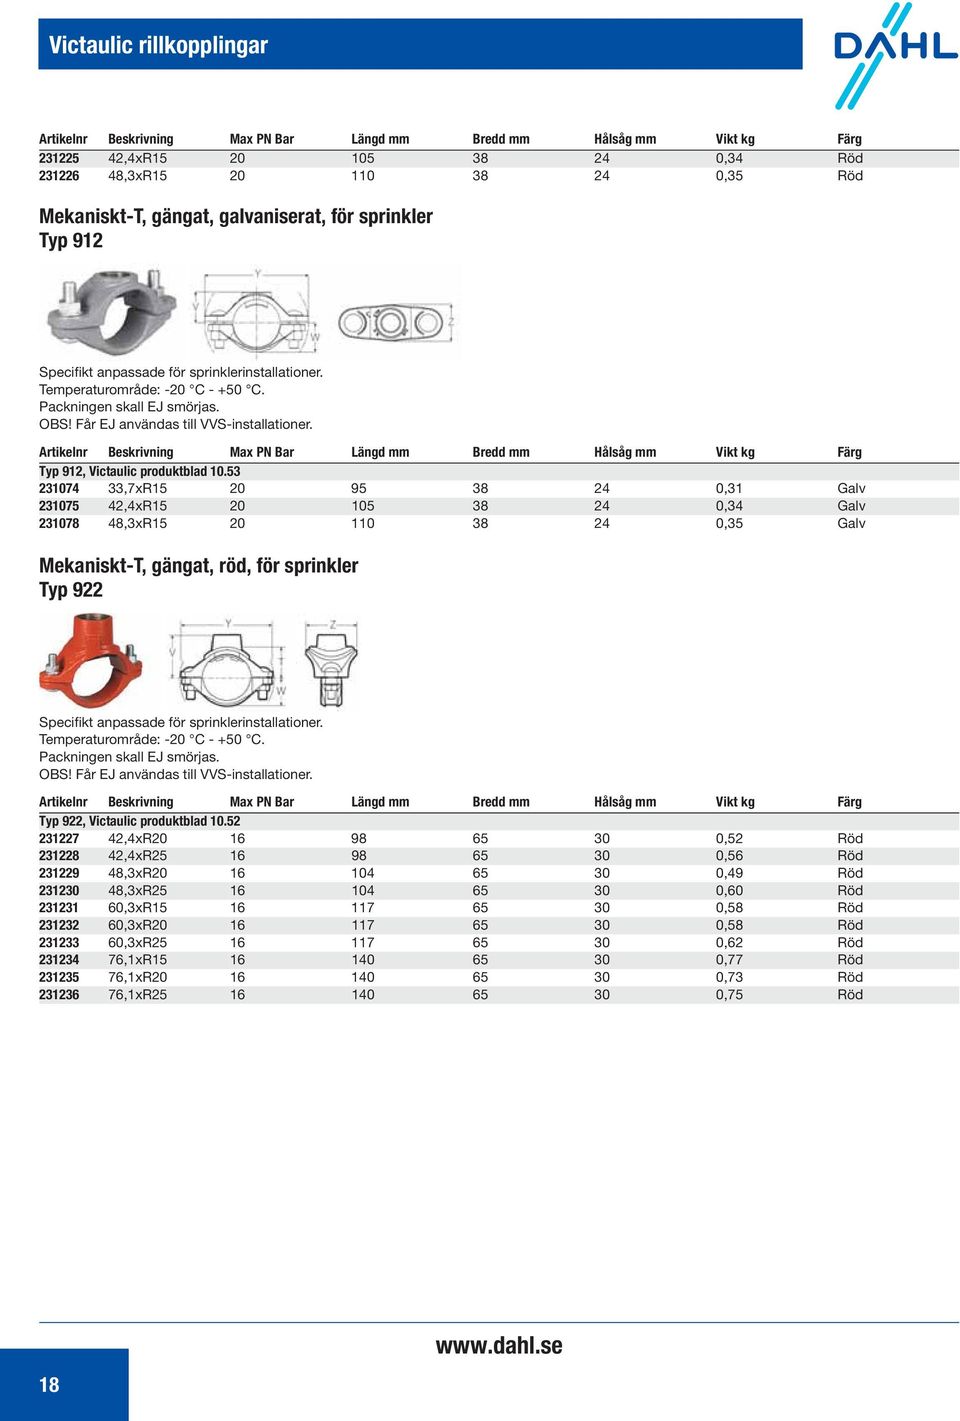 Artikelnr Beskrivning Max PN Bar Längd mm Bredd mm Hålsåg mm Vikt kg Färg Typ 912, Victaulic produktblad 10.